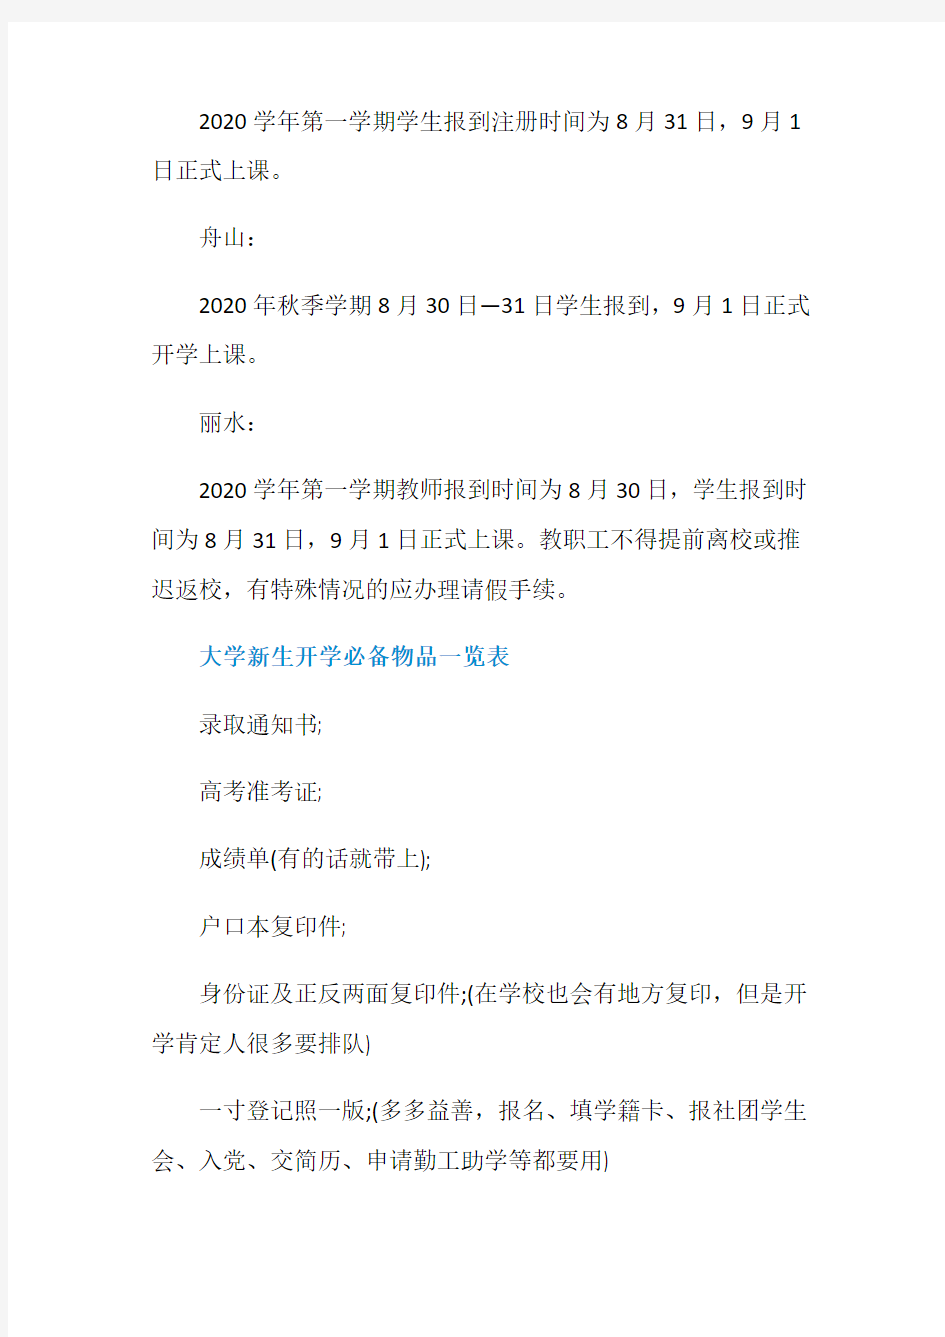 2020年浙江省中小学秋季开学时间安排表